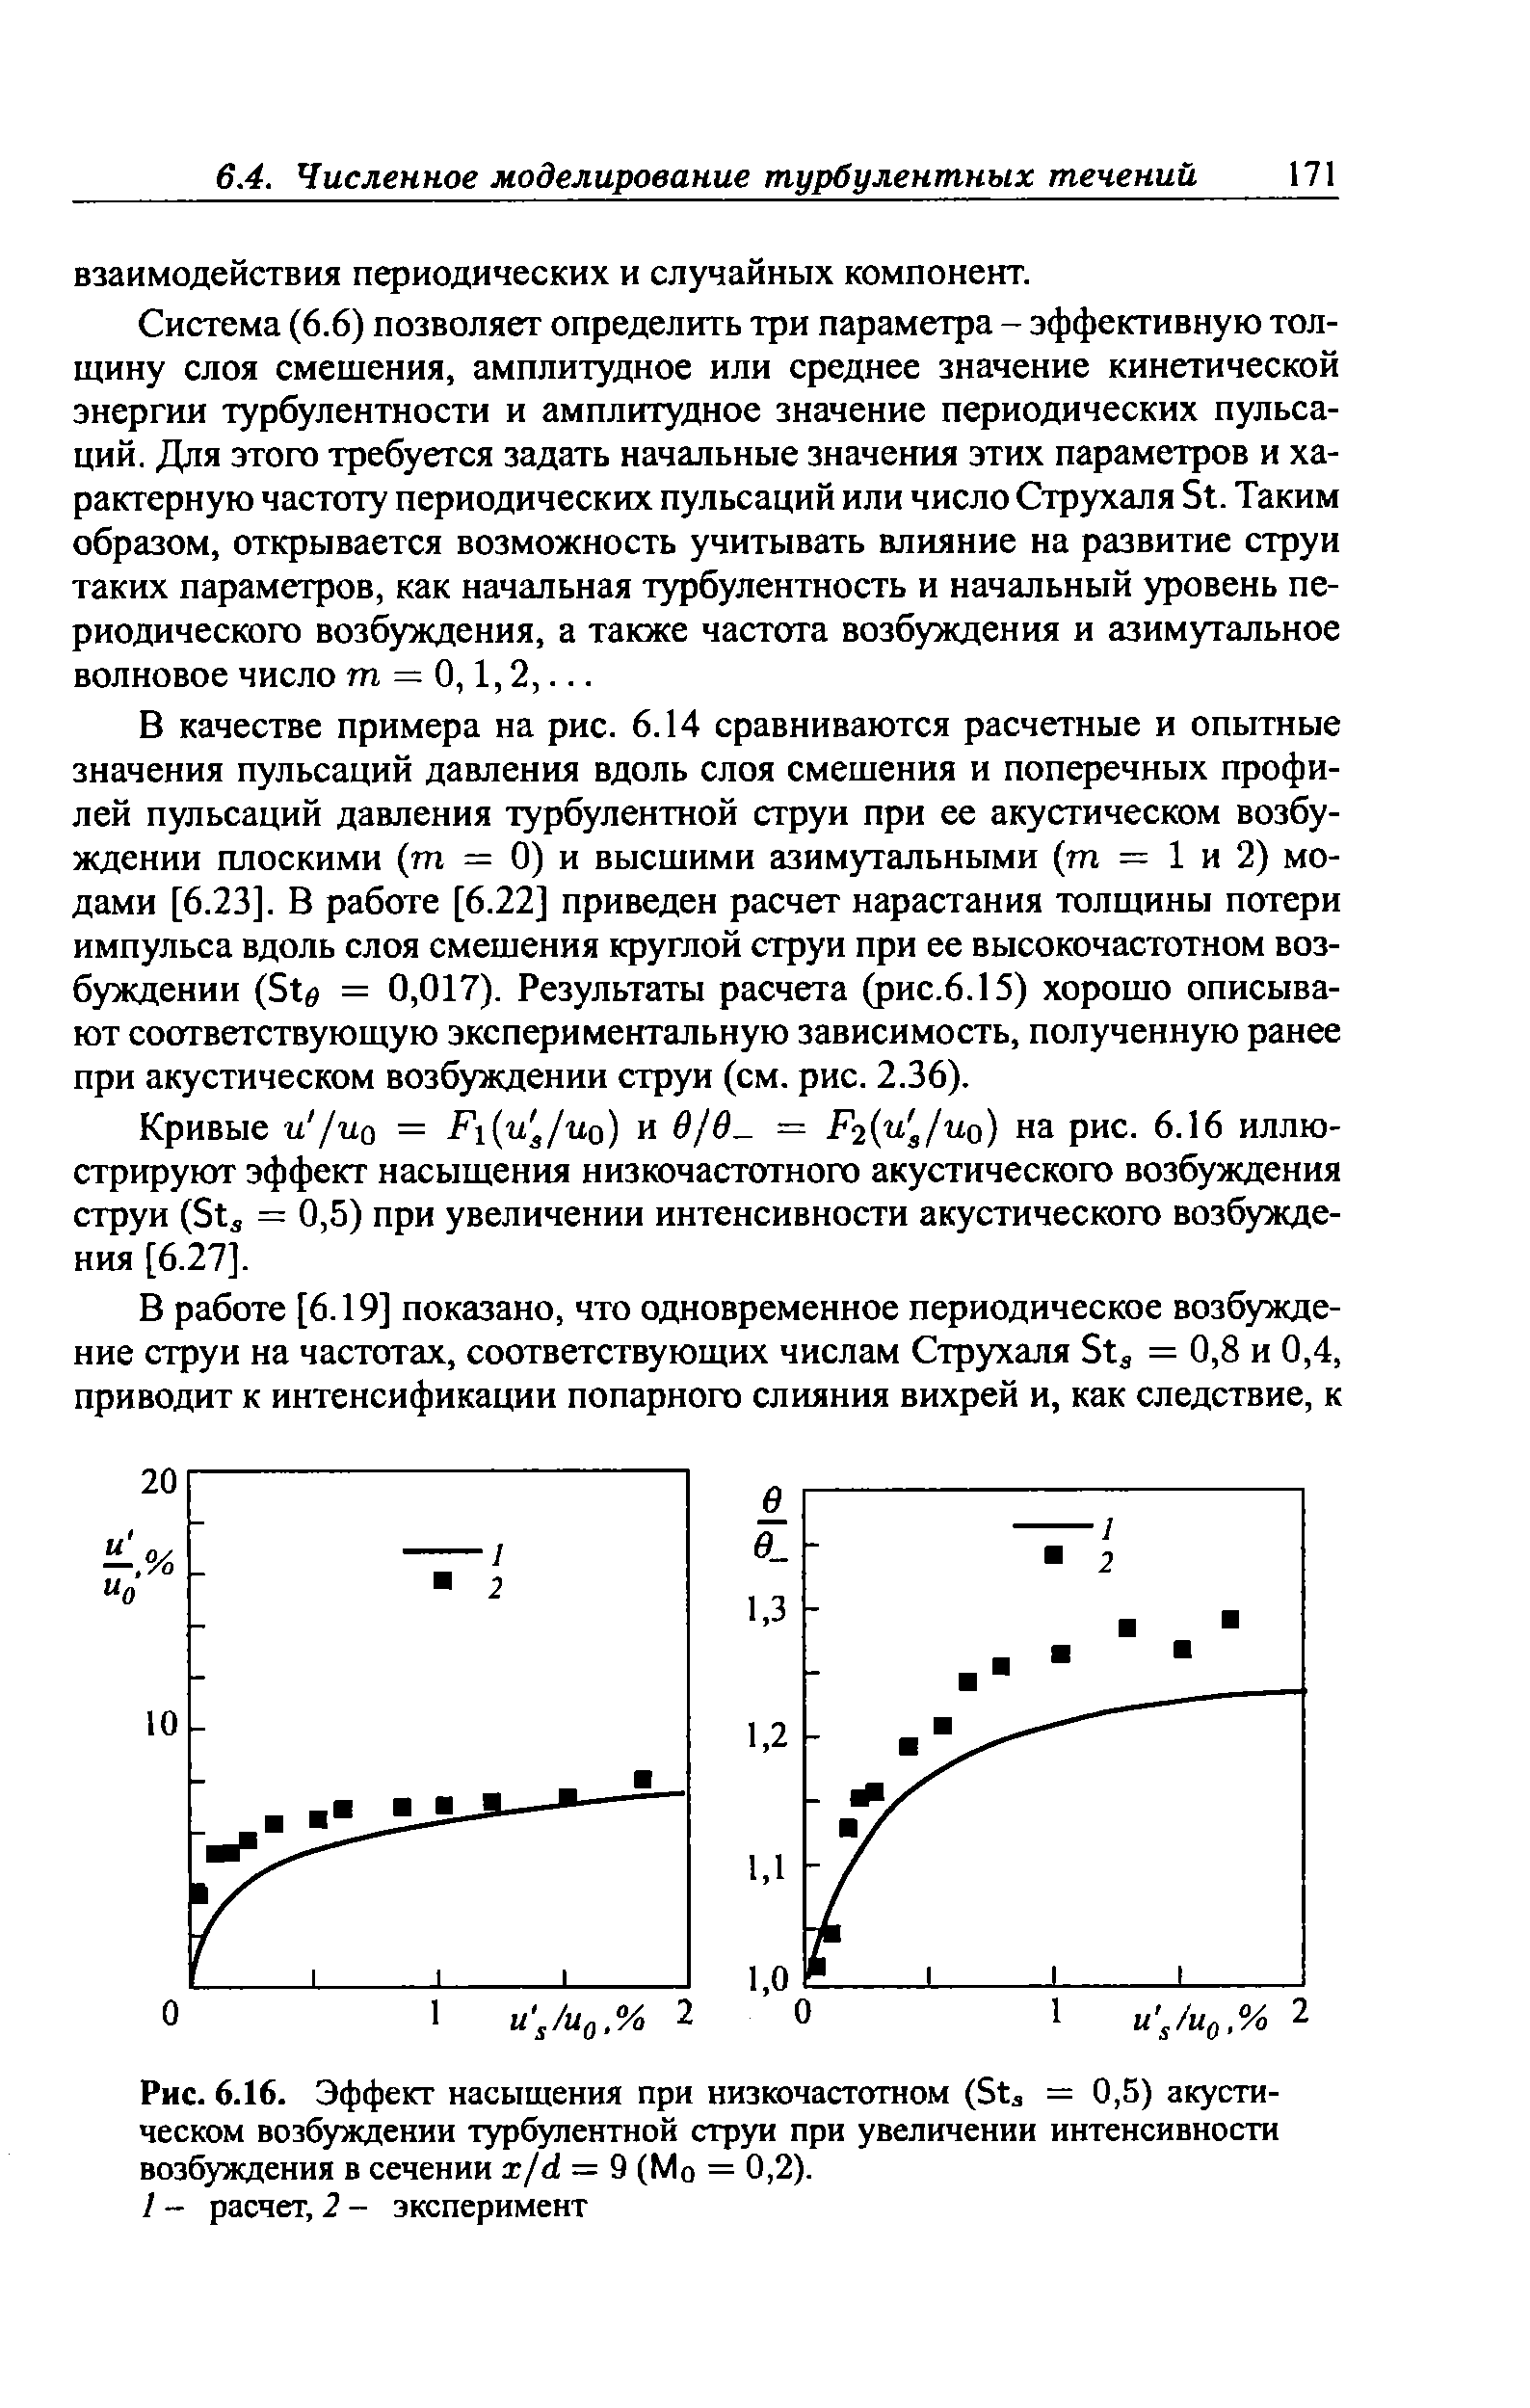 Рис. 6.16. Эффект насыщения при низкочастотном (Sta = 0,5) акустическом возбуждении <a href="/info/5640">турбулентной струи</a> при увеличении интенсивности возбуждения в сечении x/d = 9 (Мо = 0,2).
